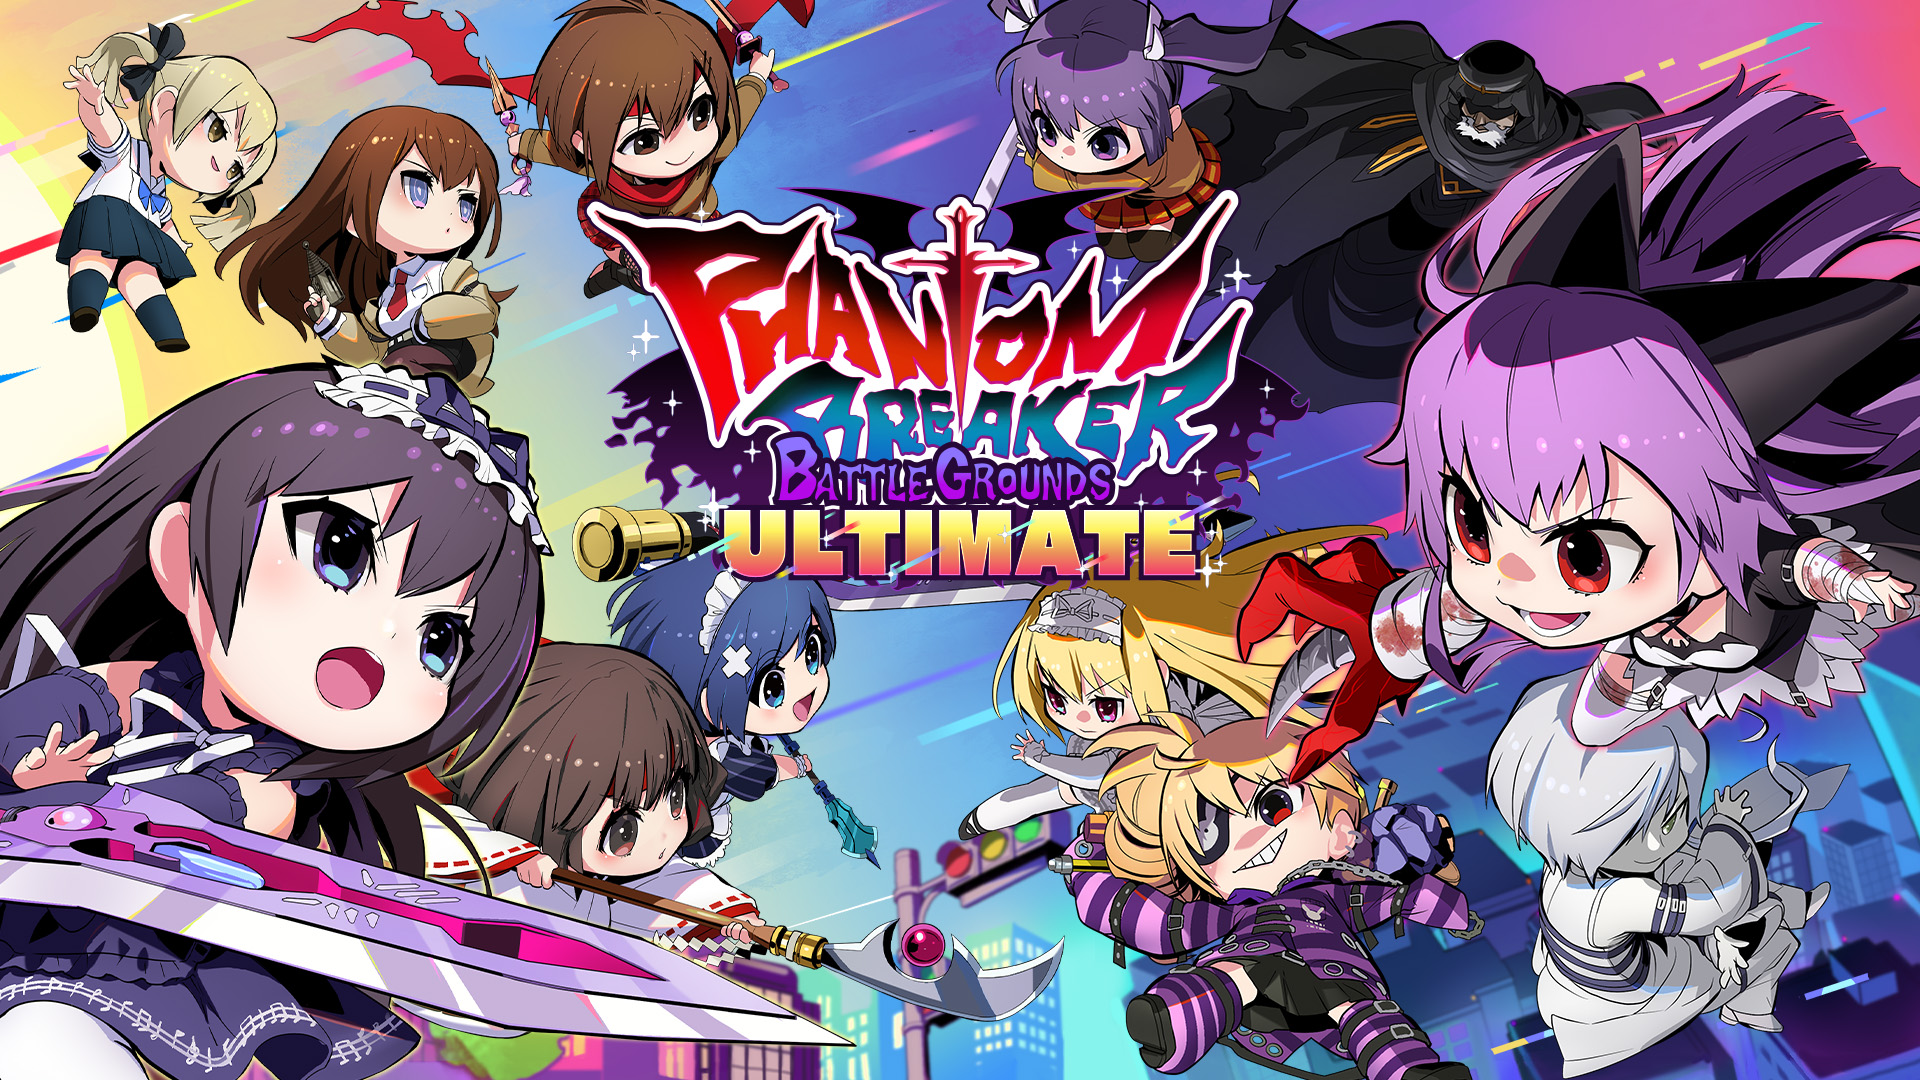 Anime Fighting Game Phantom Breaker: Omnia Announced